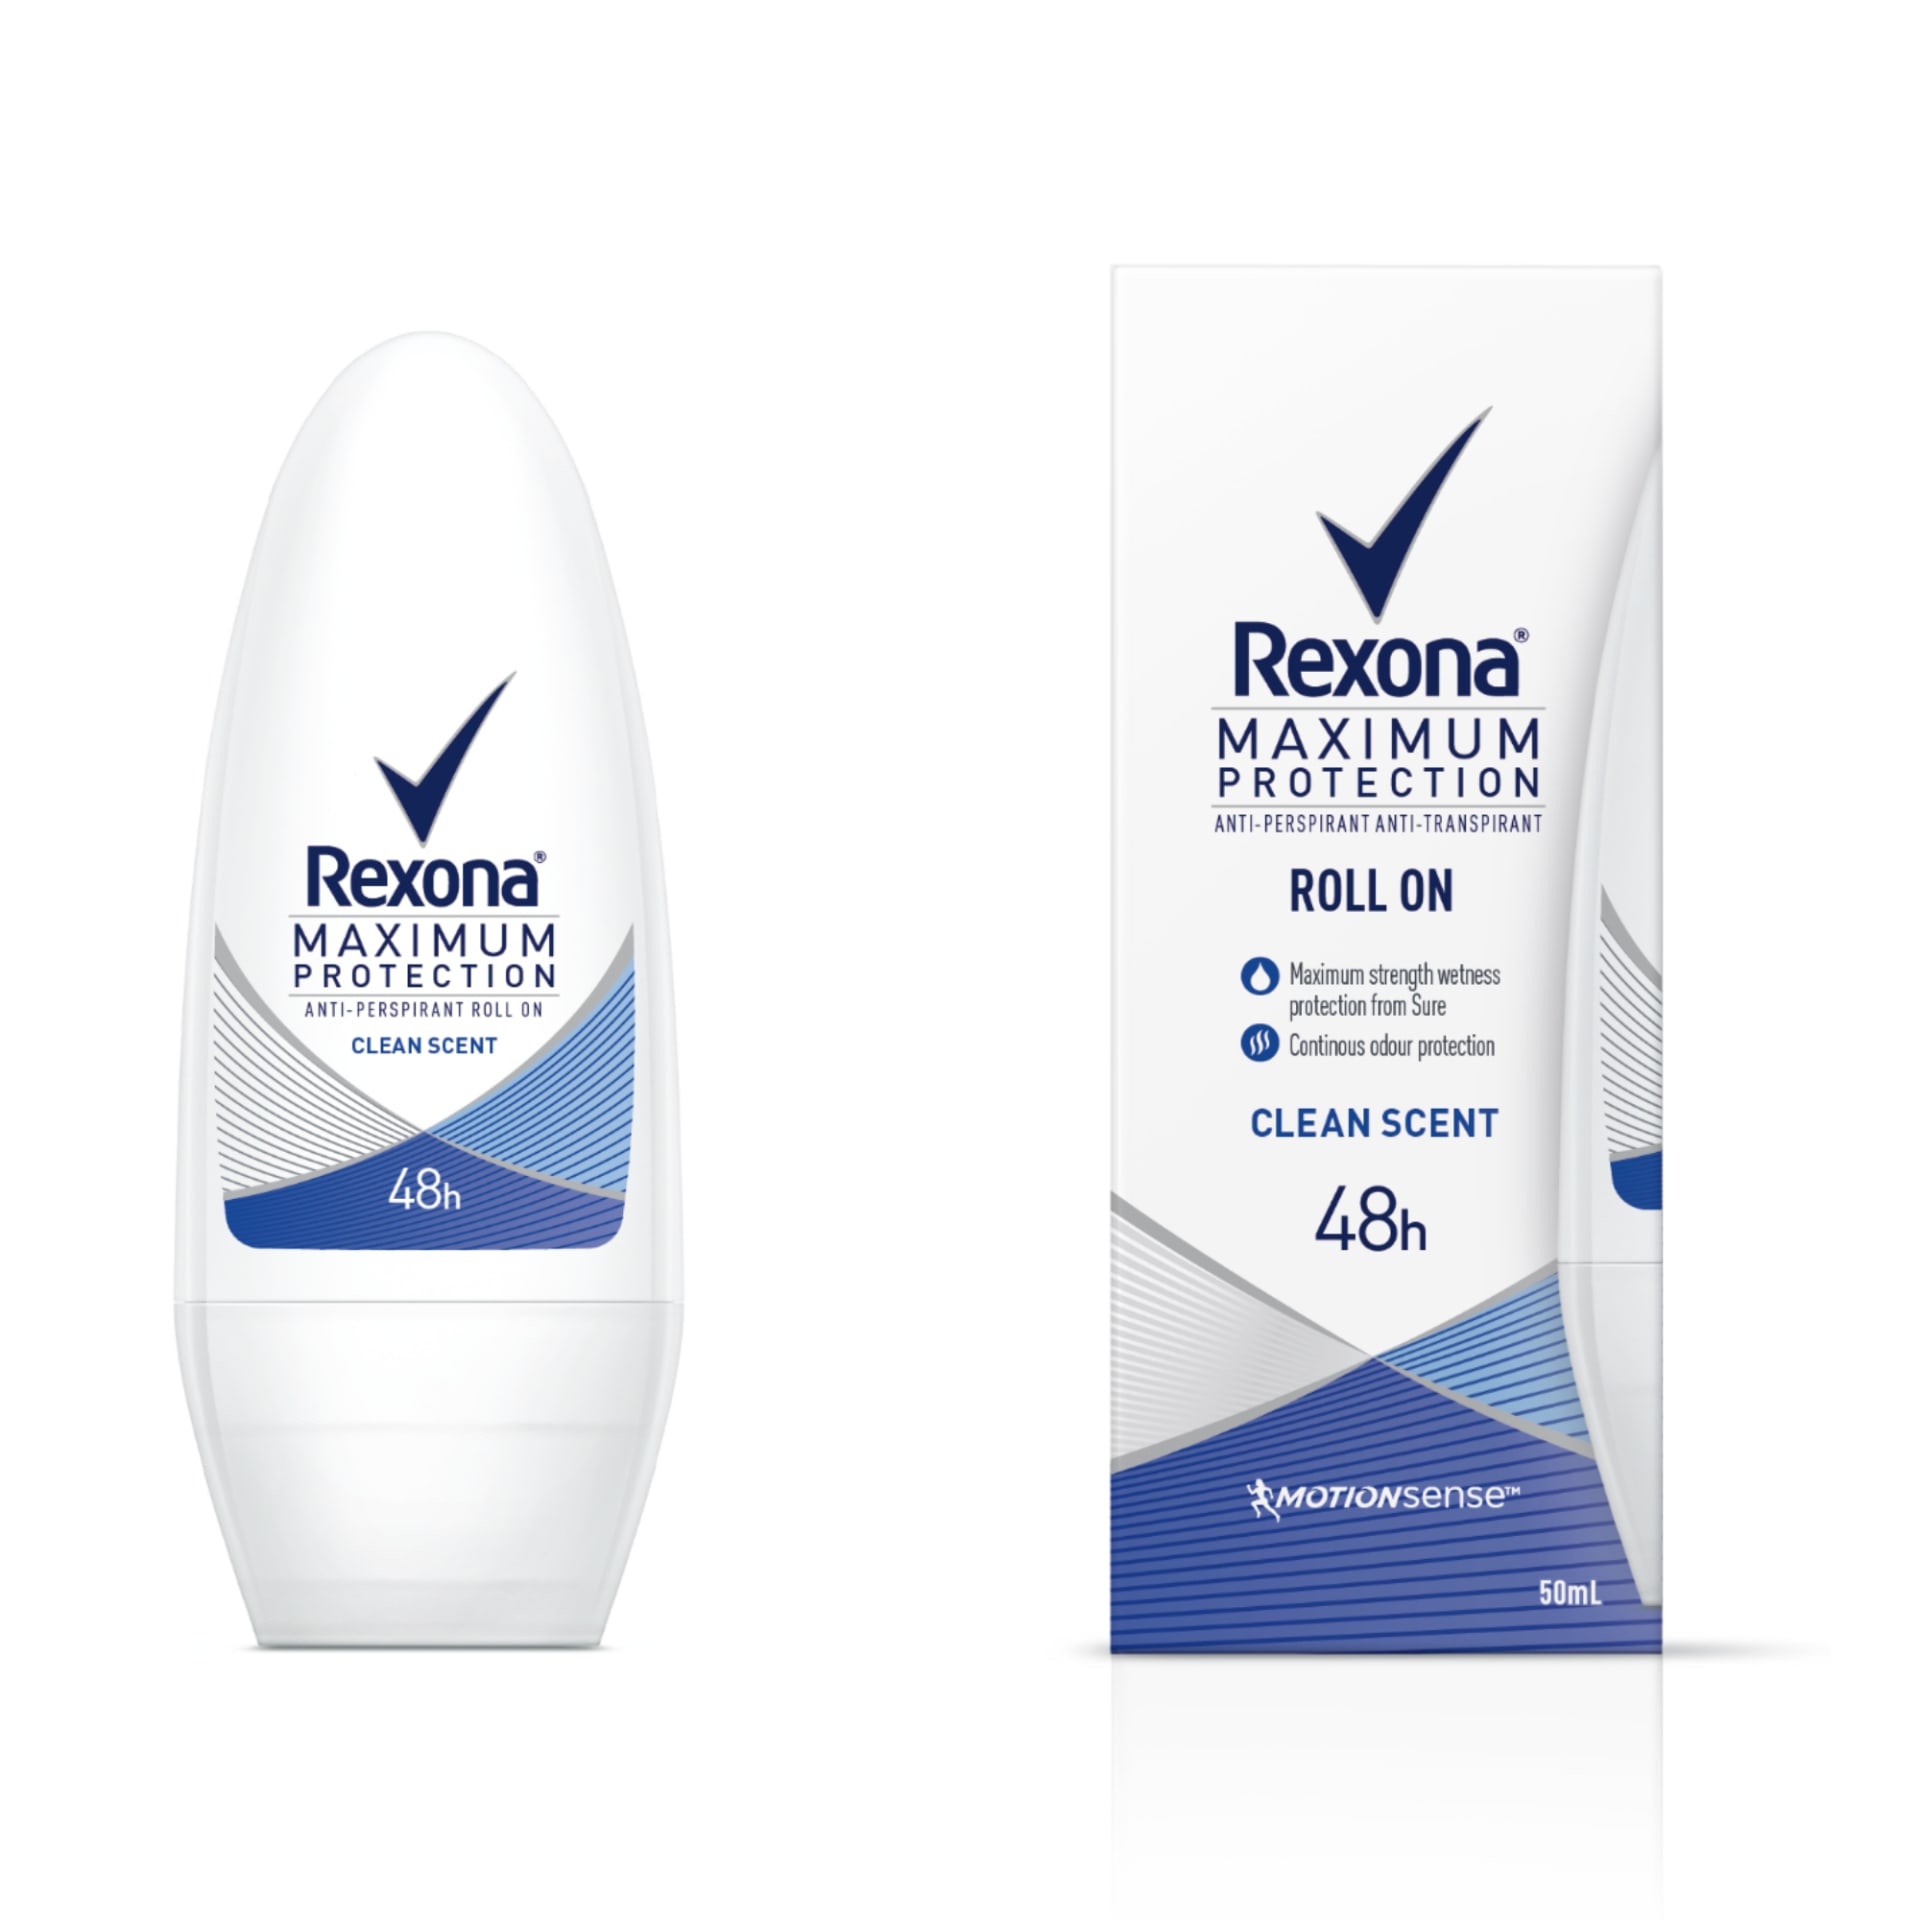 Antiperspirant Rexona Max Protection roll-on vás spolehlivě ochrání